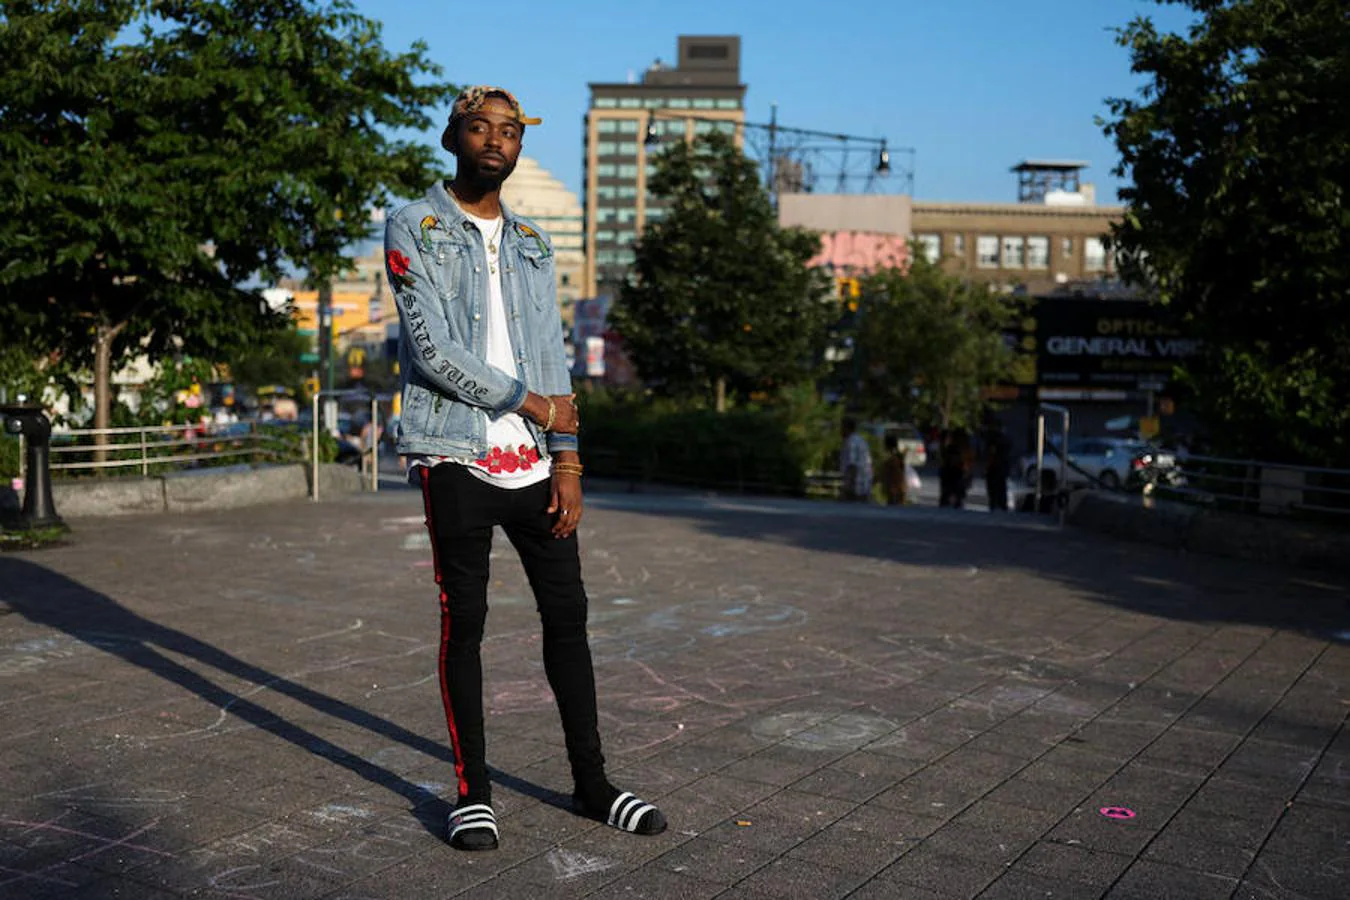 Frederick Reuben trabaja en la tienda de ropa The Gap. Mientras posa en el Bronx explica que "lleva lo que le gusta, independientemente de lo que piense la gente".